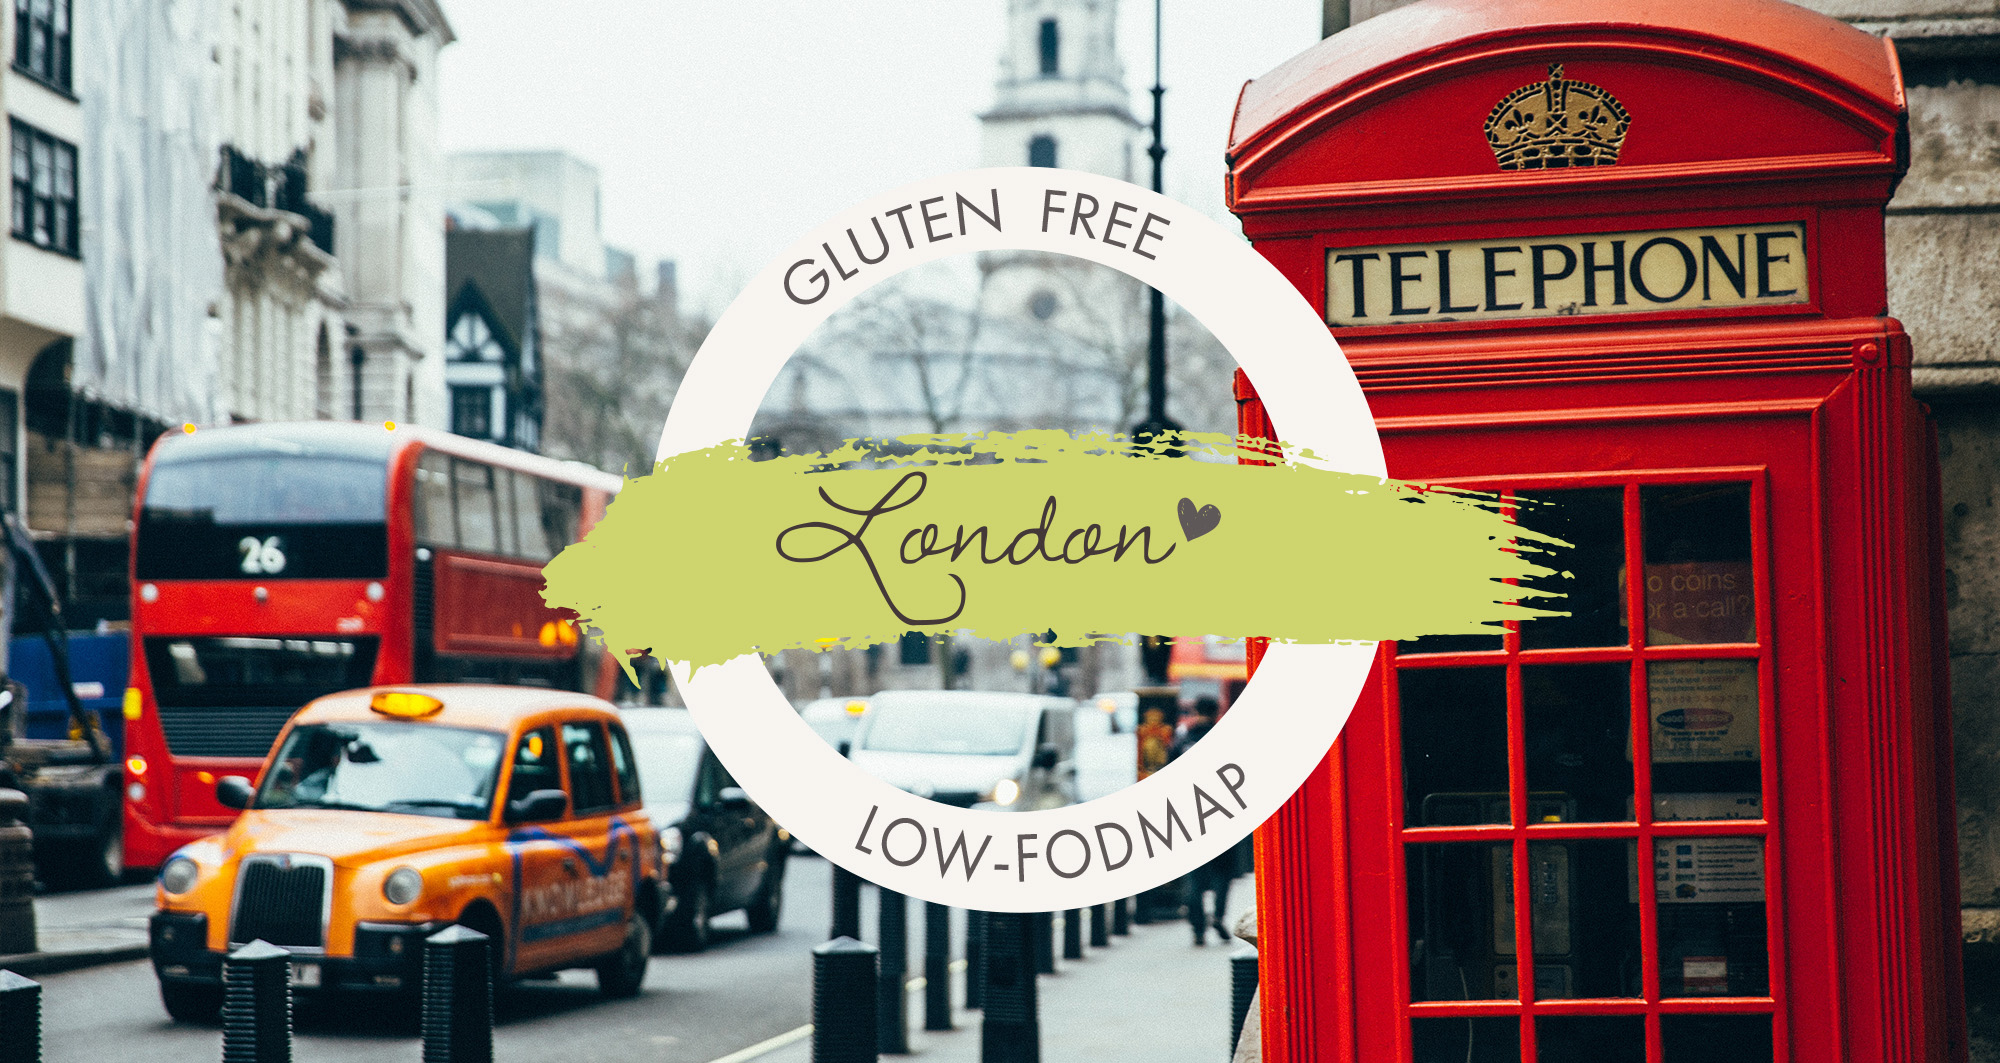 London, England – Gluten Free & low-FODMAP